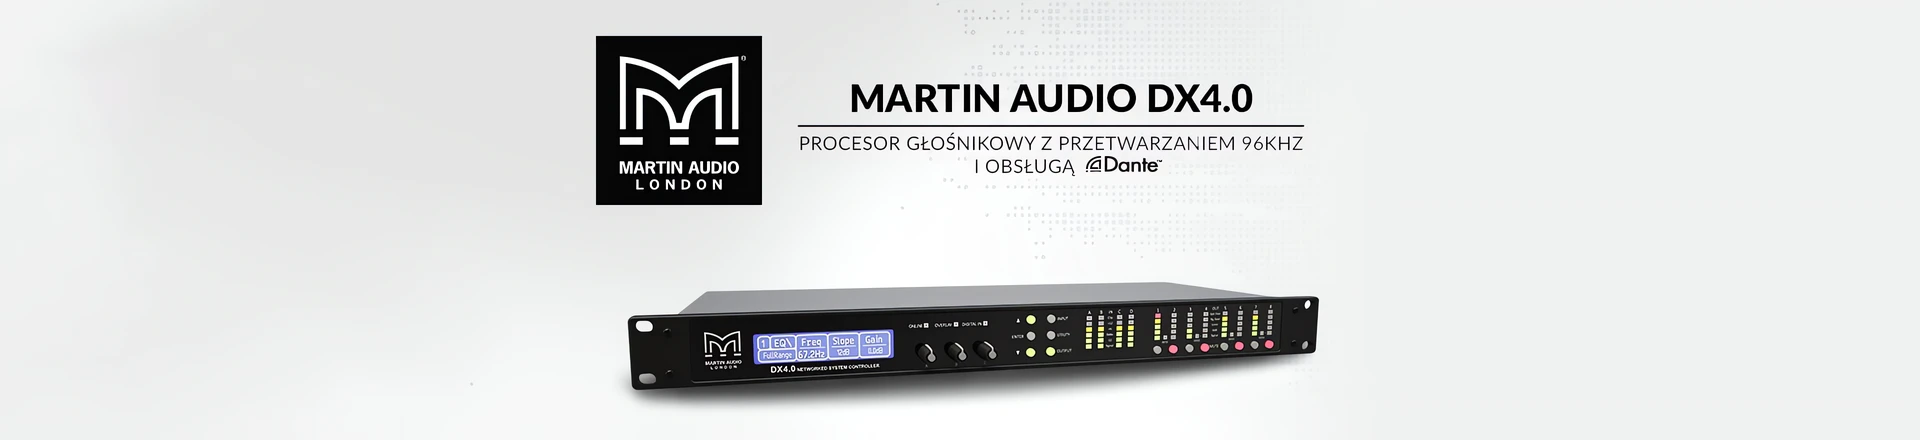 Martin Audio DX4.0 - Nowy procesor ze wsparciem protokołu Dante